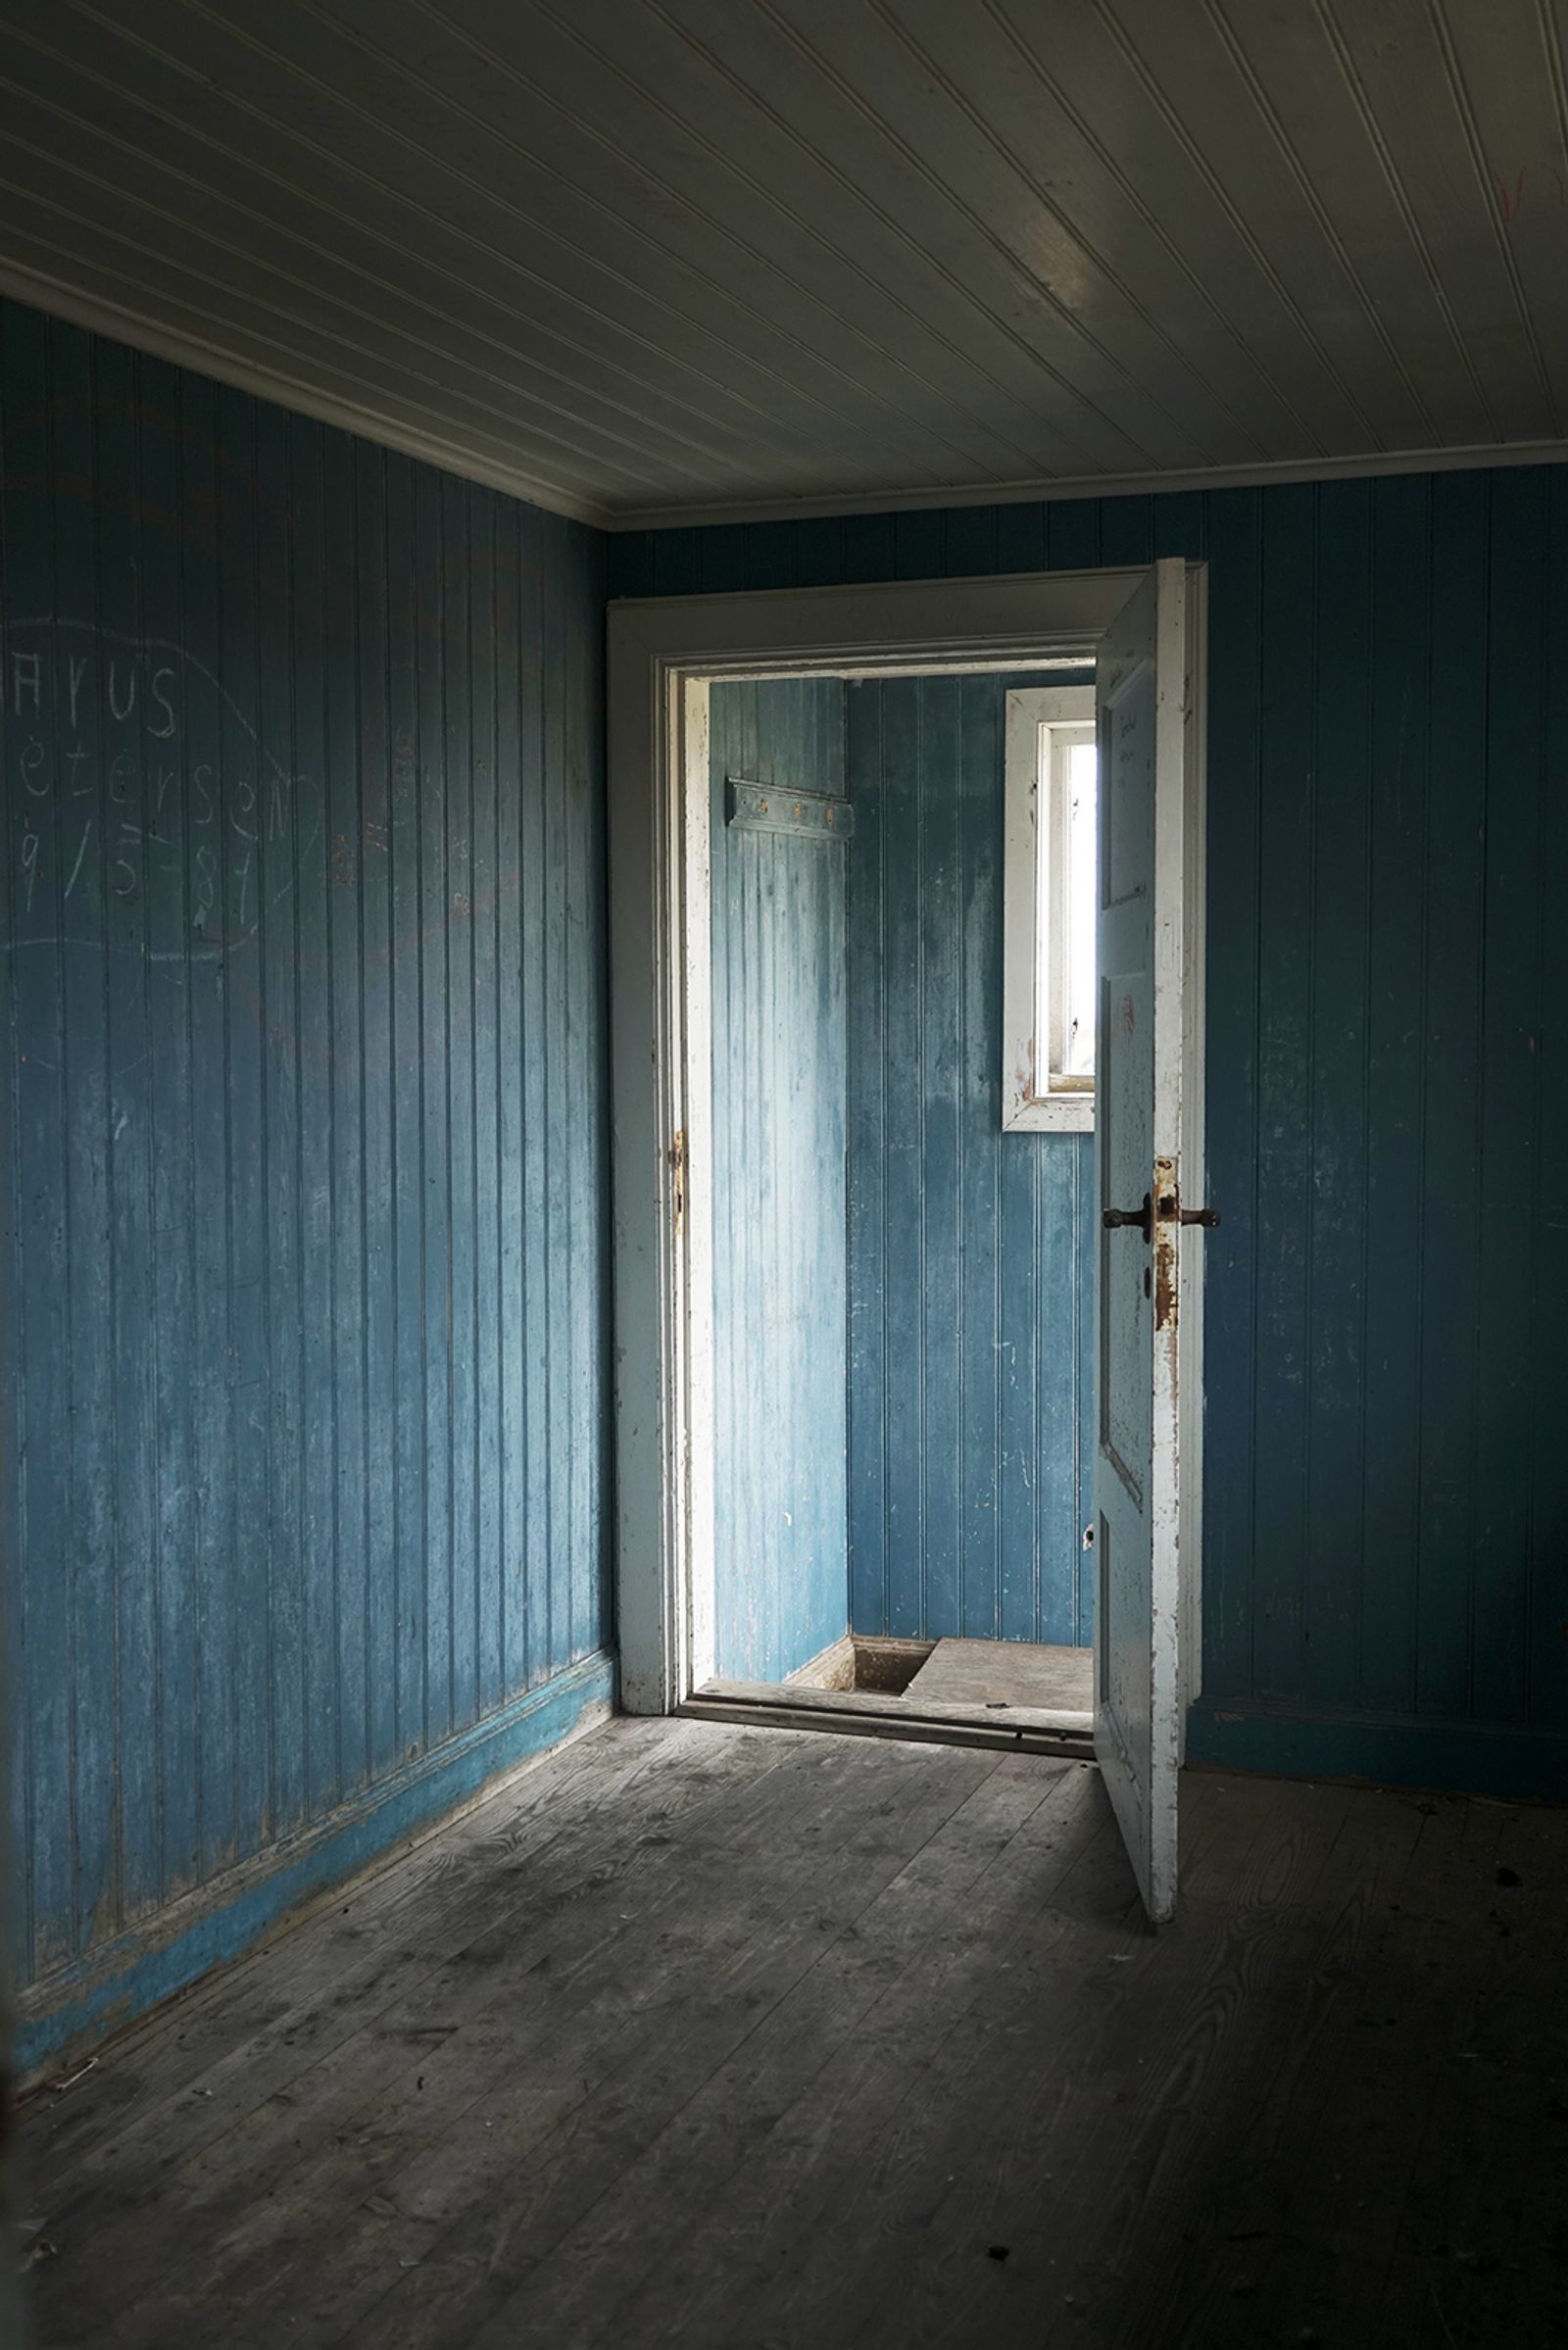 © Melodie Lamotte d'Incamps - 14- The open door